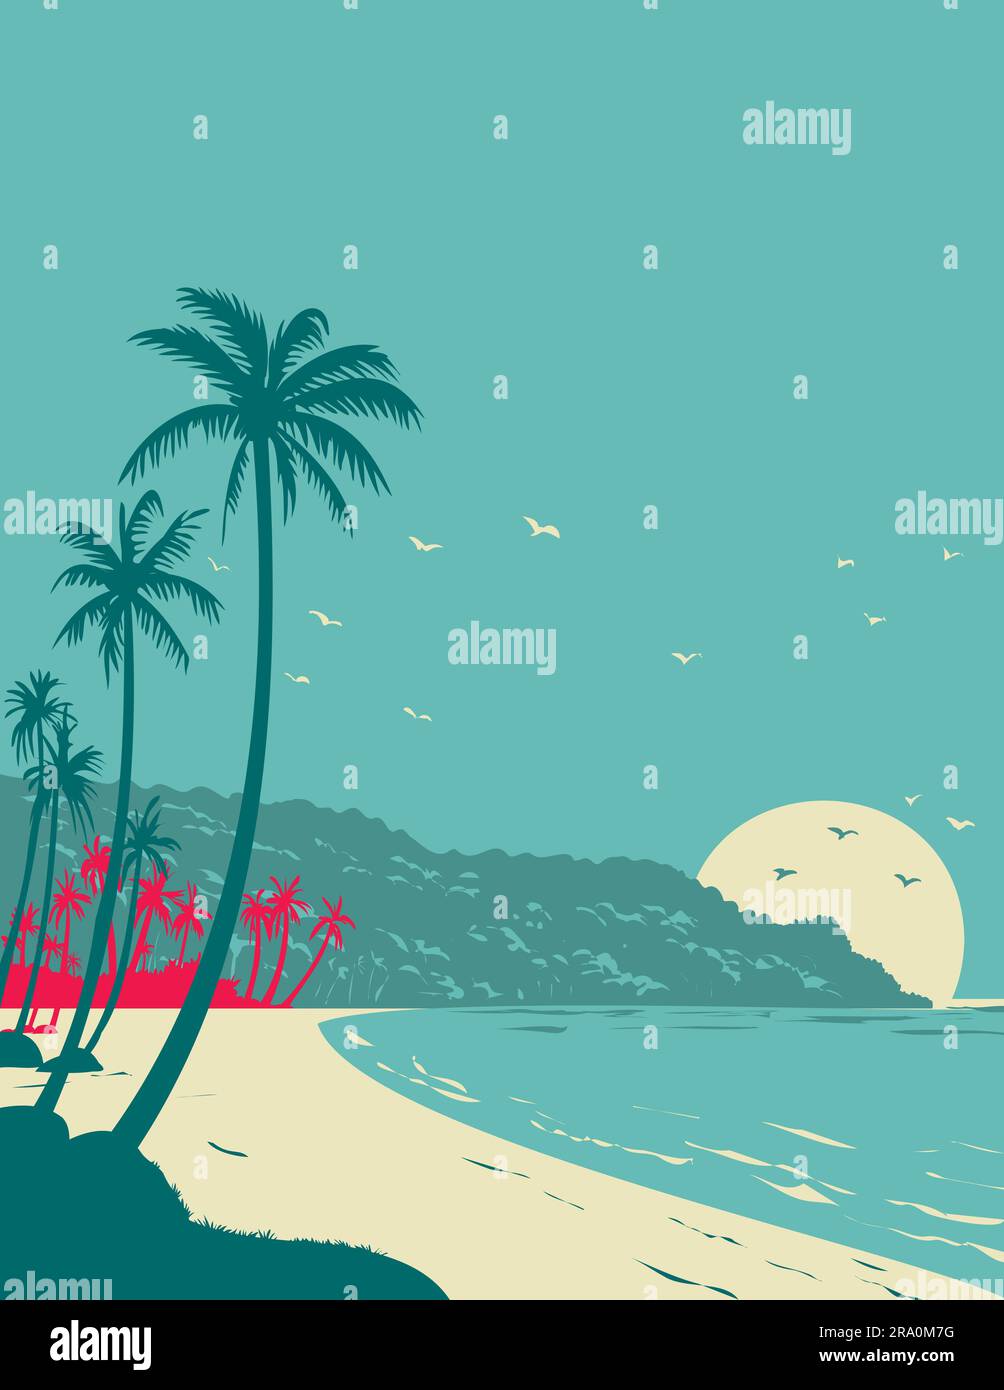 WPA-Posterkunst von Long Beach Phu Quoc bei Sonnenaufgang oder Sonnenuntergang in der Provinz Kien Giang, Vietnam, in der Verwaltung von Bauprojekten oder im Art déco-Stil Stockfoto